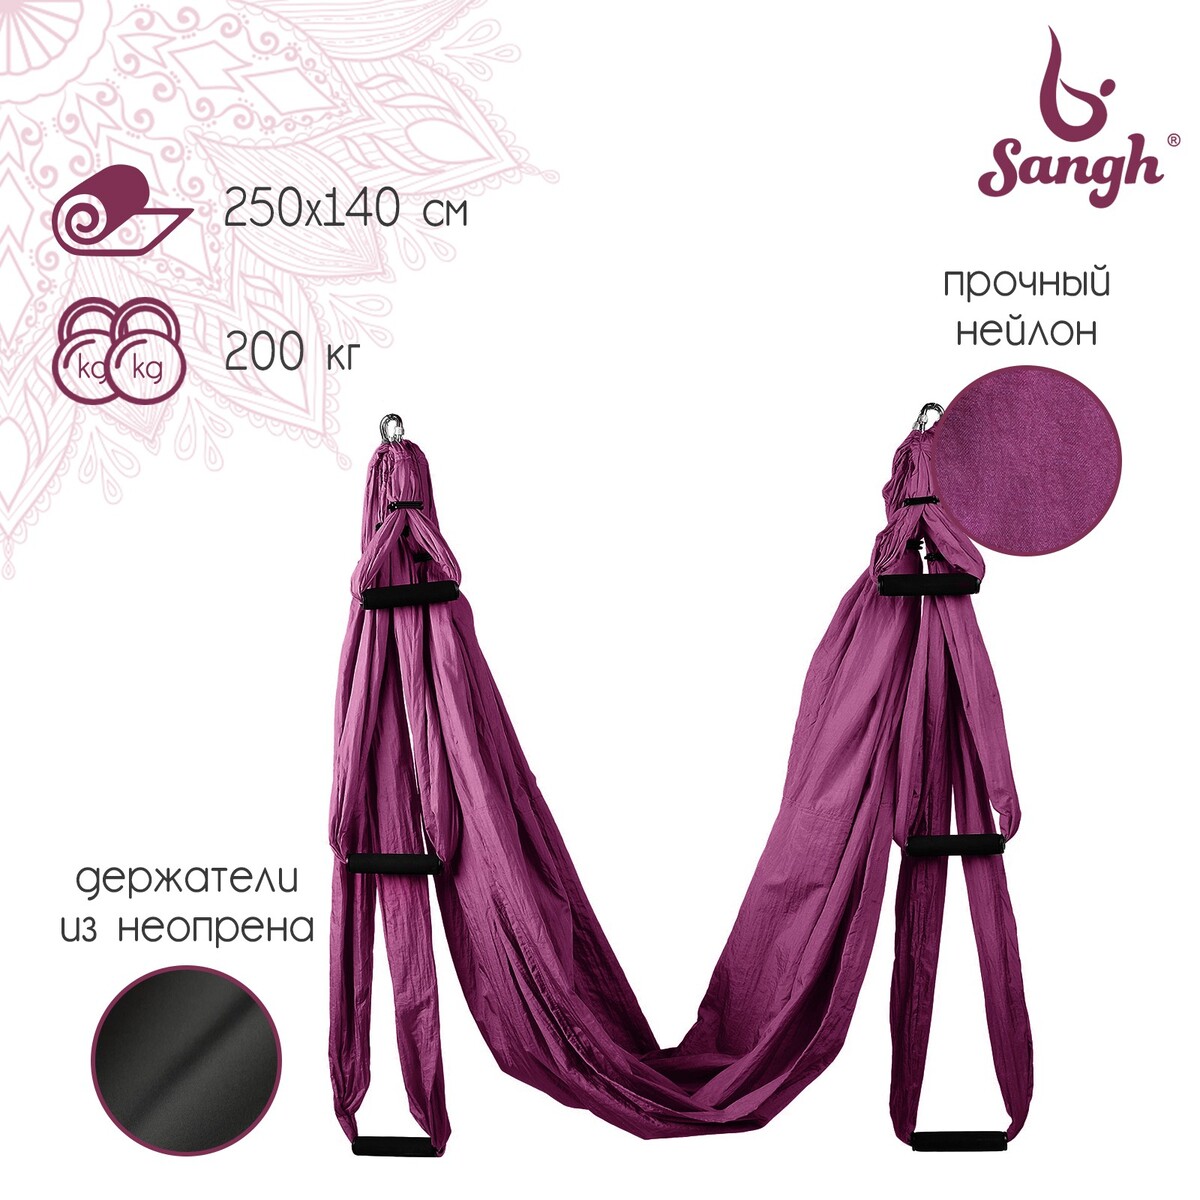 Гамак для йоги sangh, 250×140 см, цвет фиолетовый kampfer гамак для йоги yoga sky